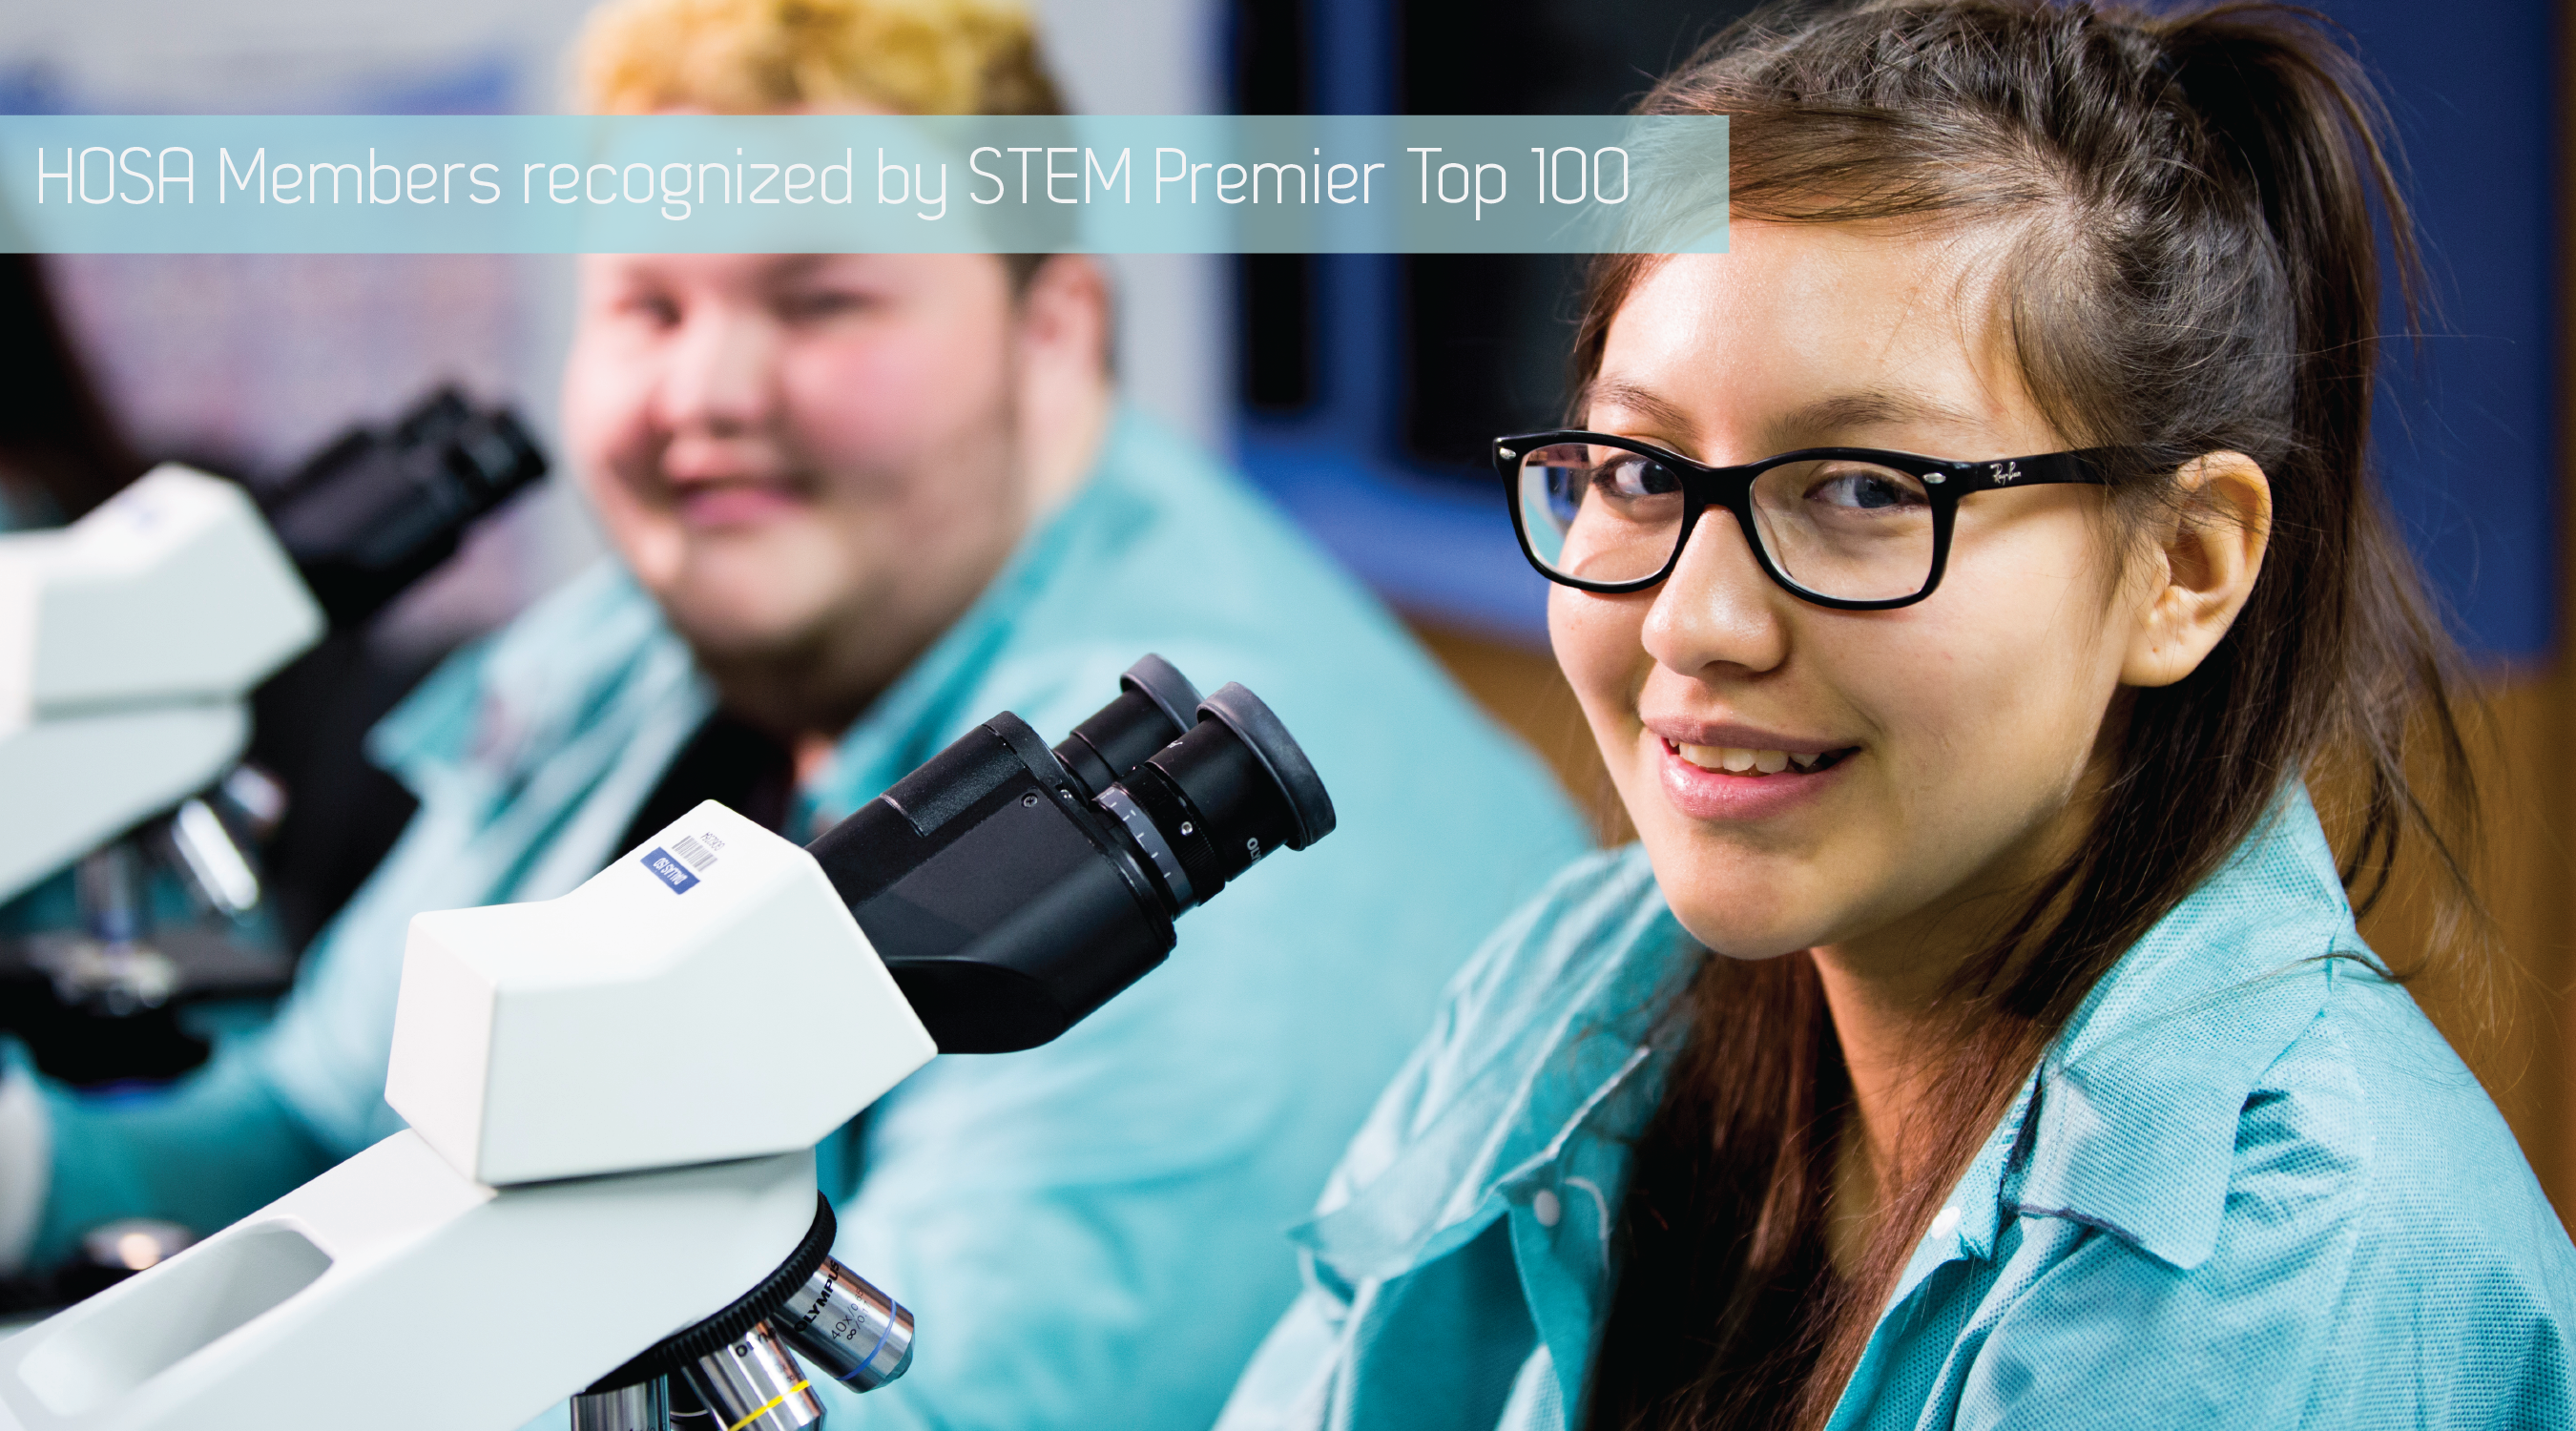 HOSA Members Rank in STEM Premier Top 100